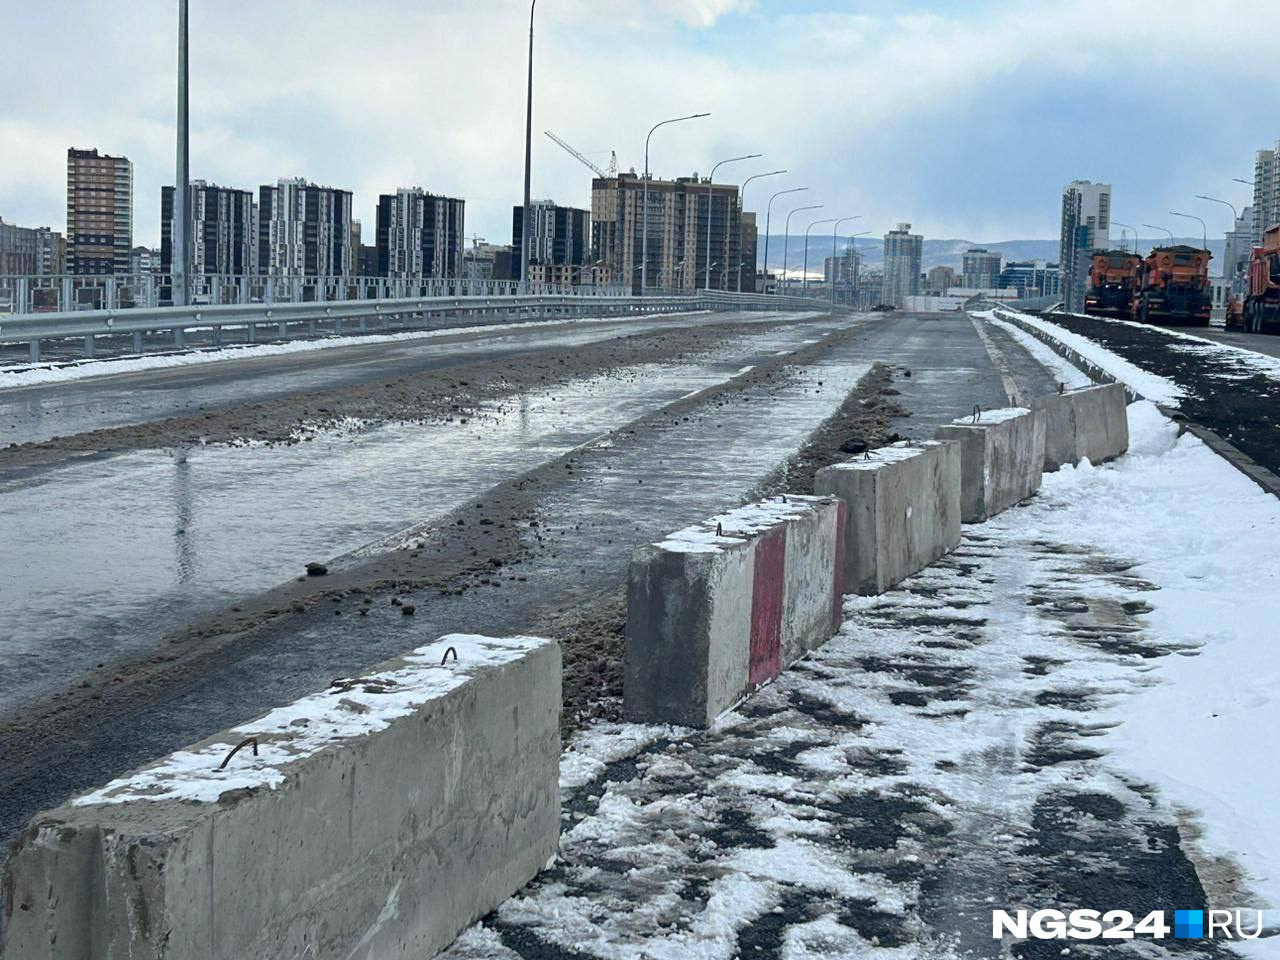 Мэру пригрозили пальцем, на «Сибиряка» возбудили дело: что происходит после открытия развязки-недостроя на Северном шоссе